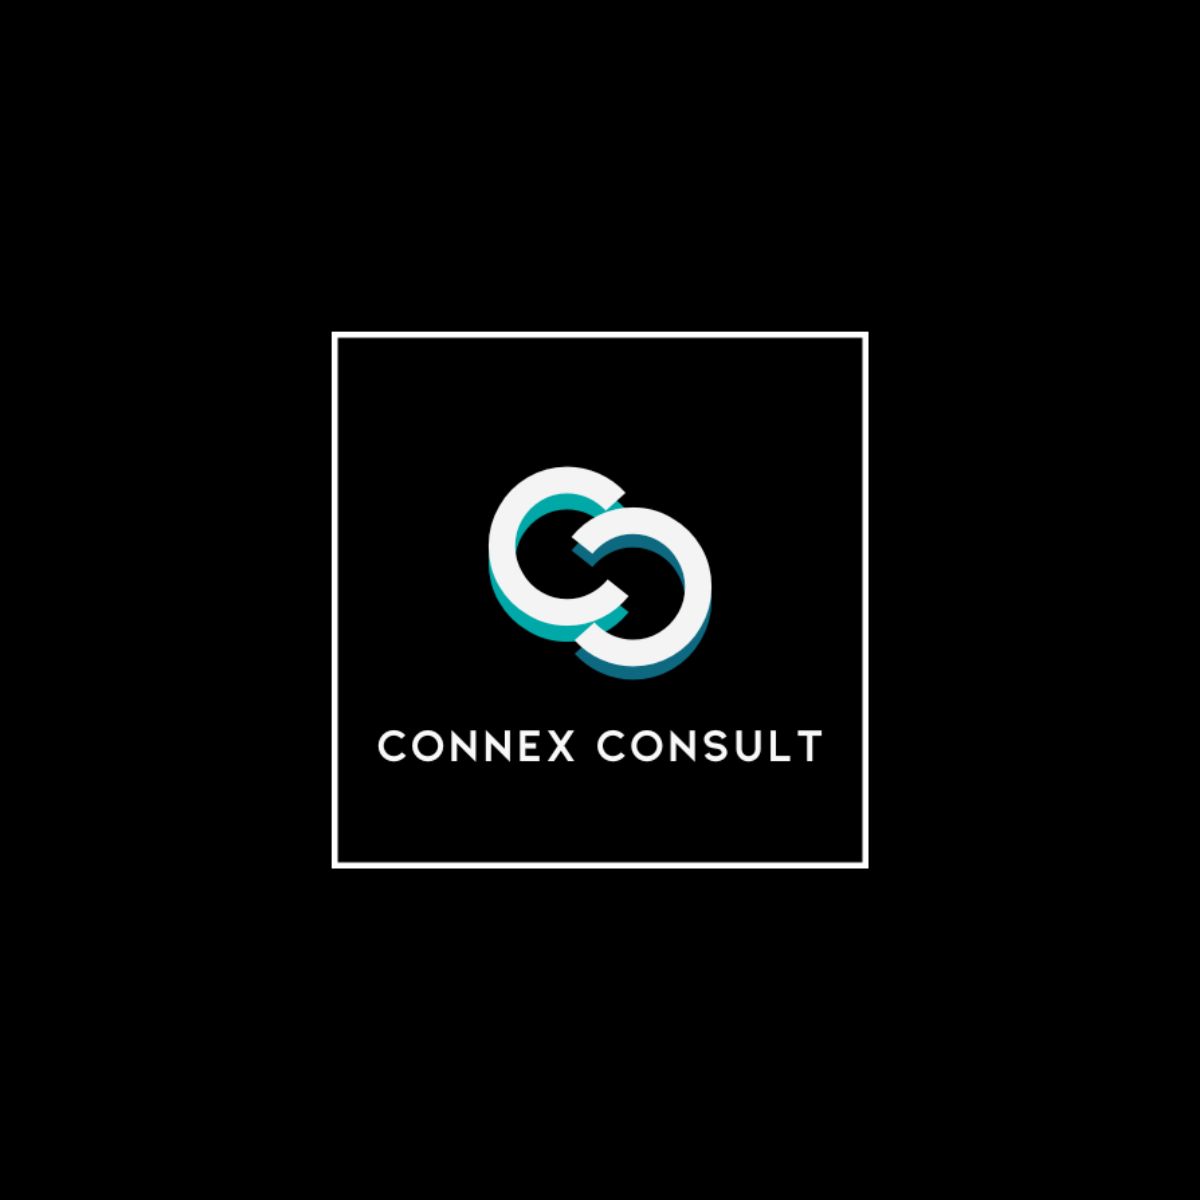 Connex Consult